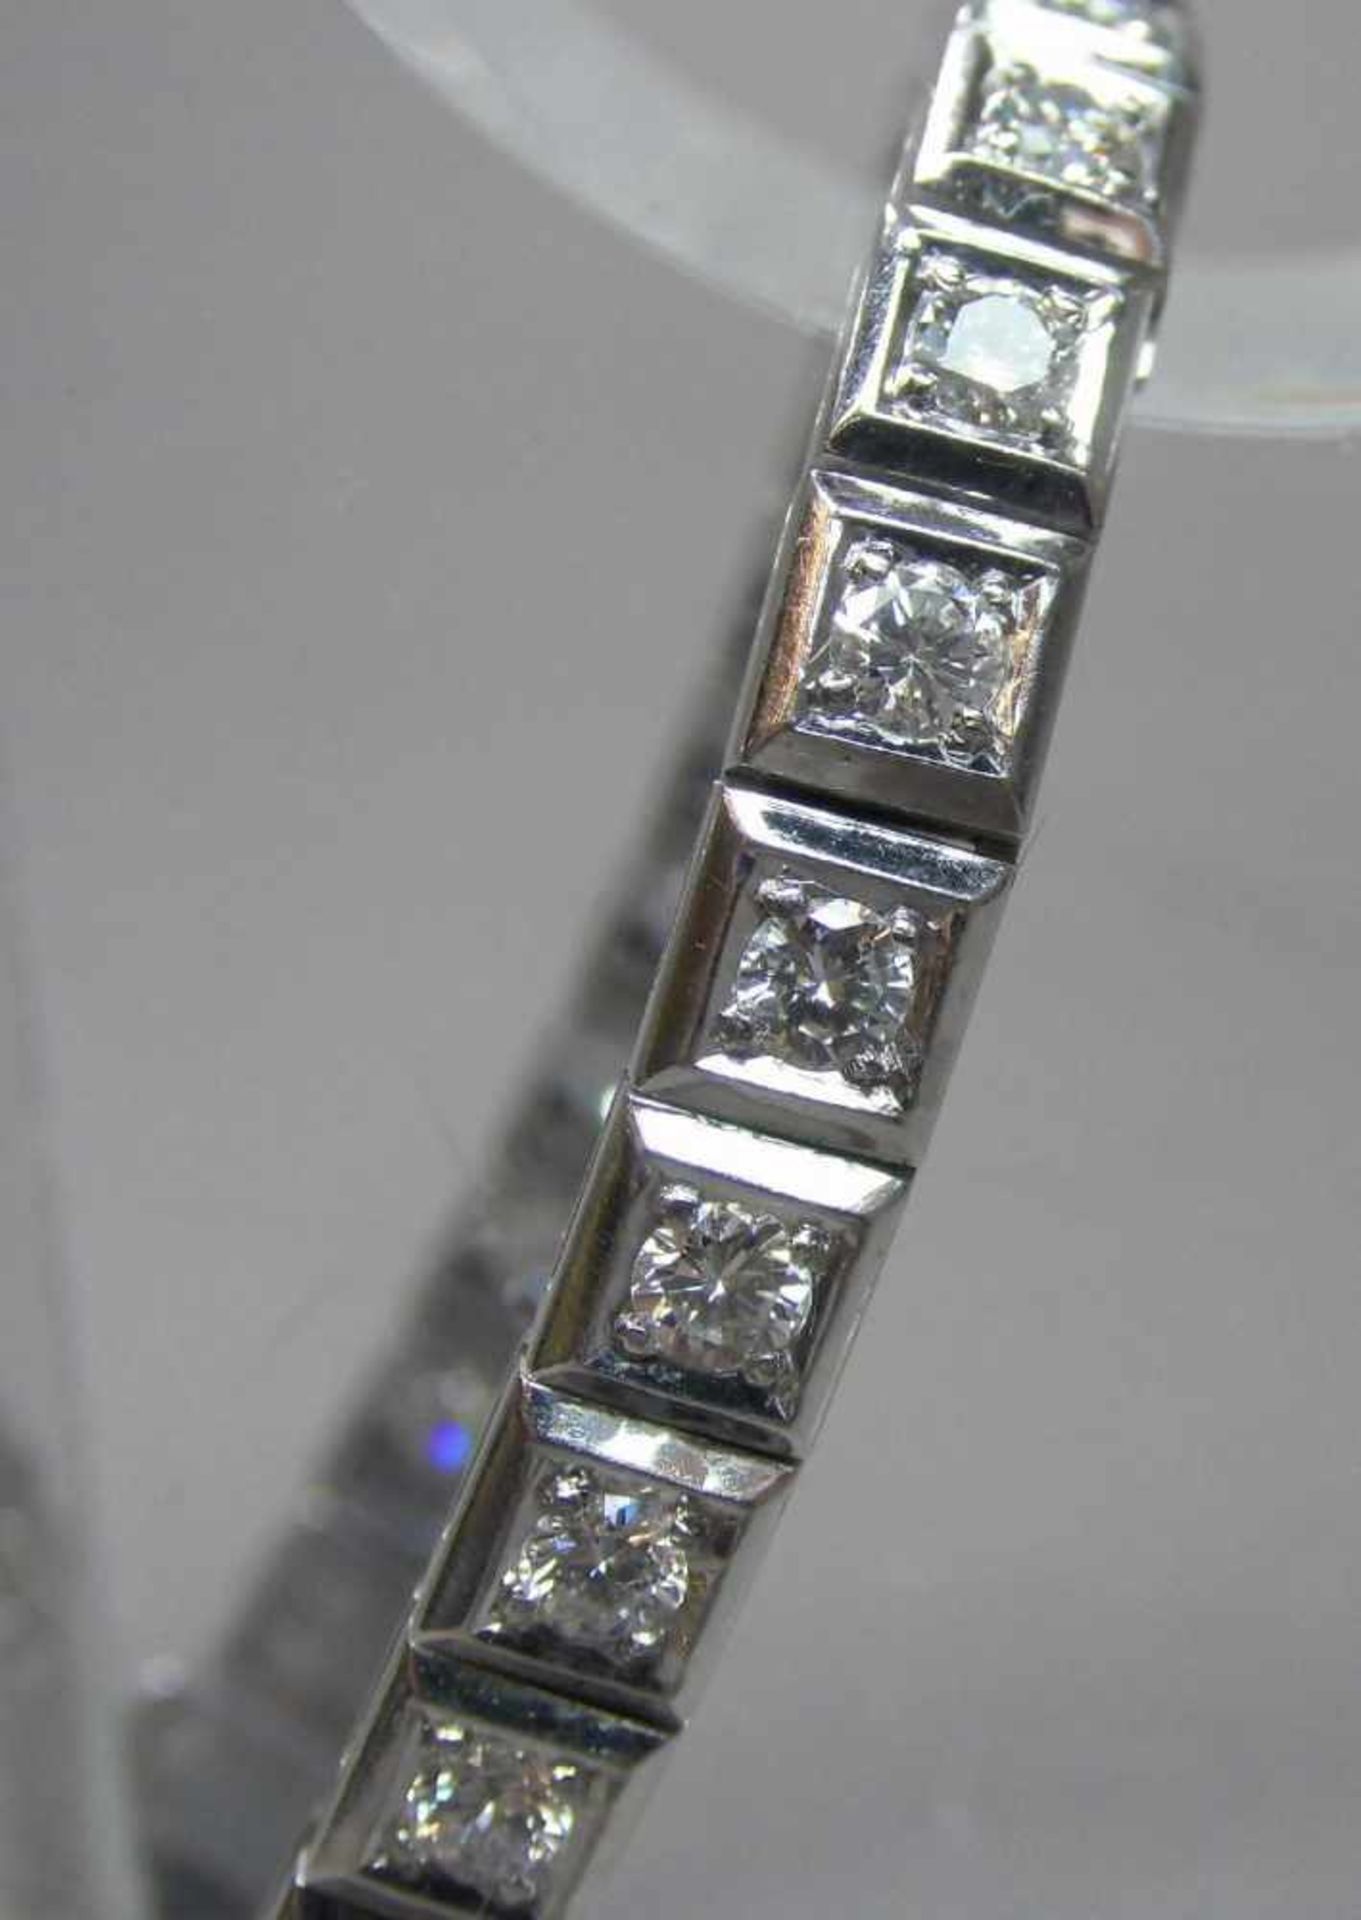 ARMBAND / bracelet, 585er Weissgold (20,6 g), besetzt mit insgesamt 31 Brillanten von je 0,1 ct. - Image 2 of 3